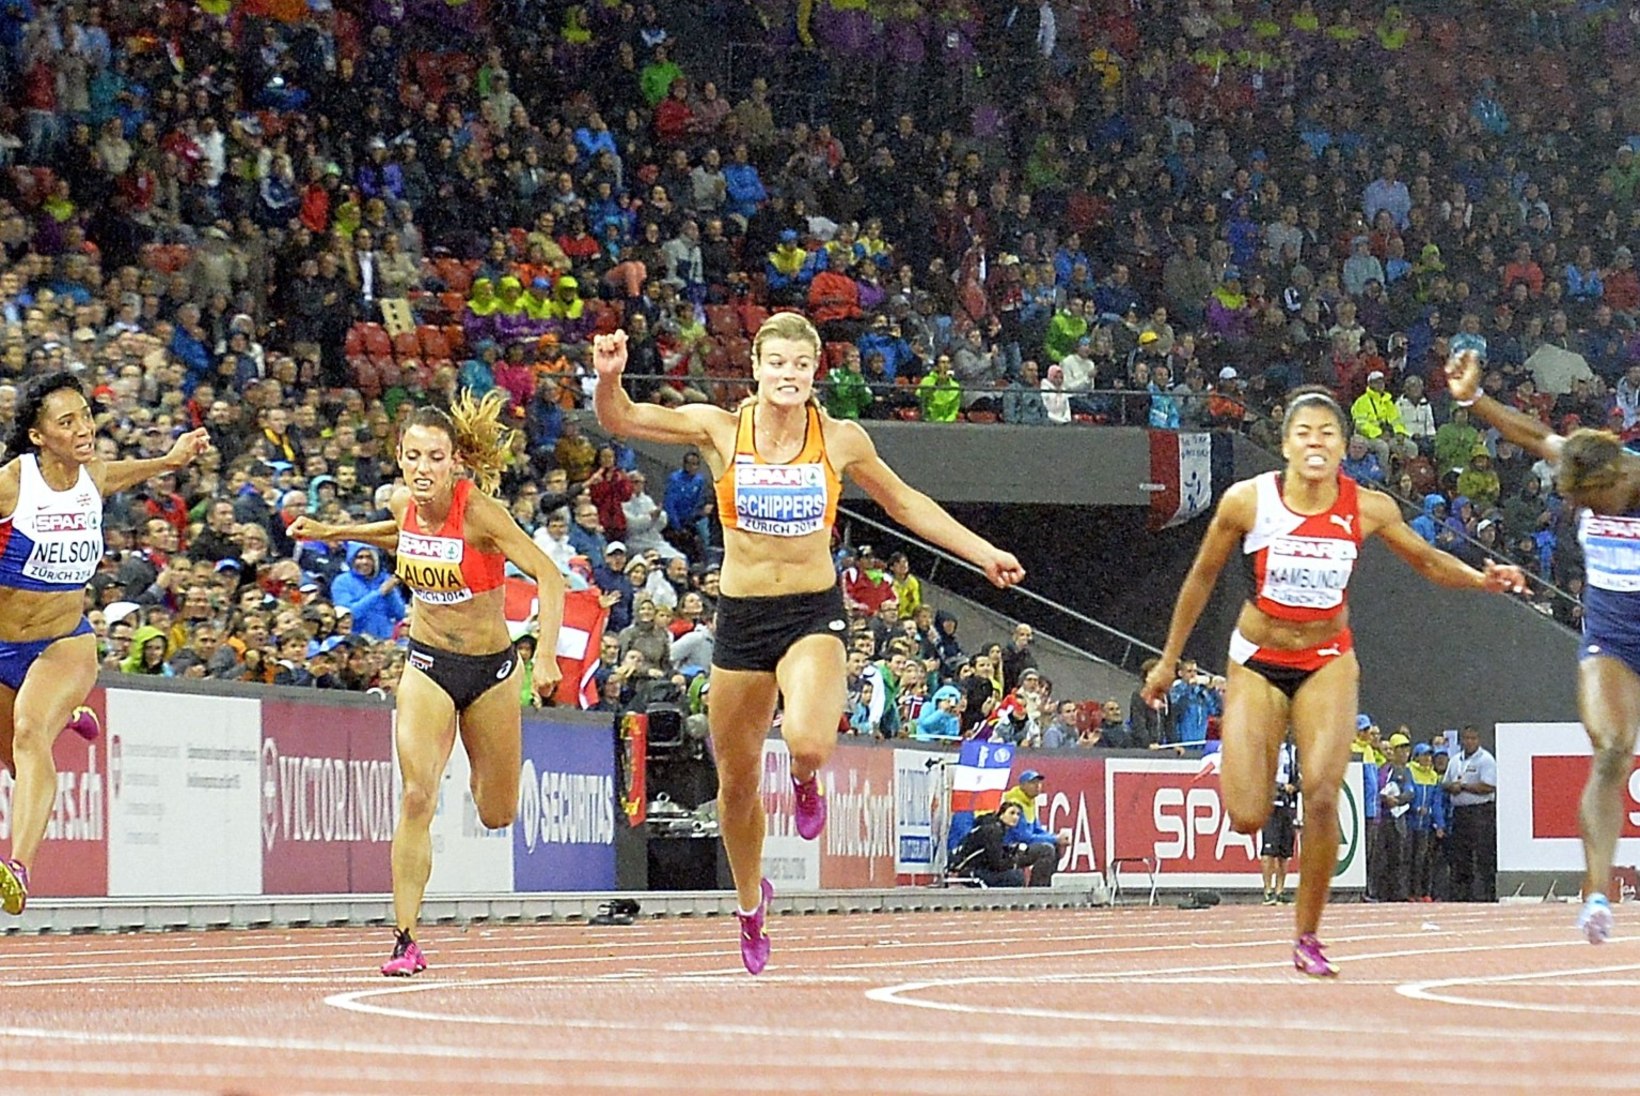 FOTOD: Hollandi seitsmevõistleja näitas 100 meetri jooksus kõikidele kandu